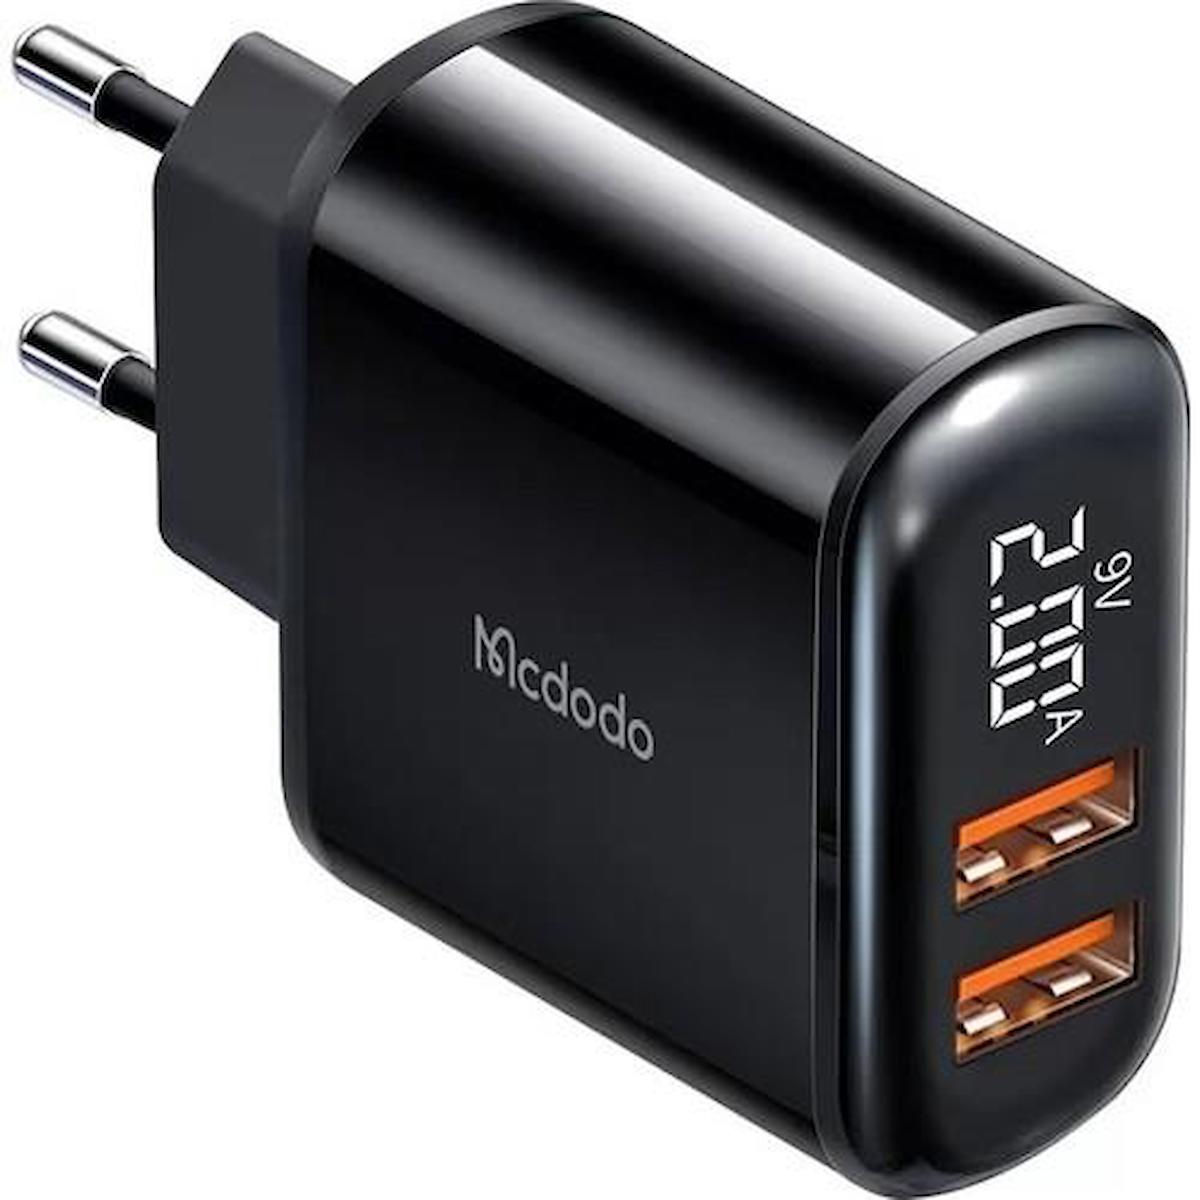 Mcdodo CH-6330 Universal USB Kablolu 18 W Hızlı Şarj Aleti Siyah